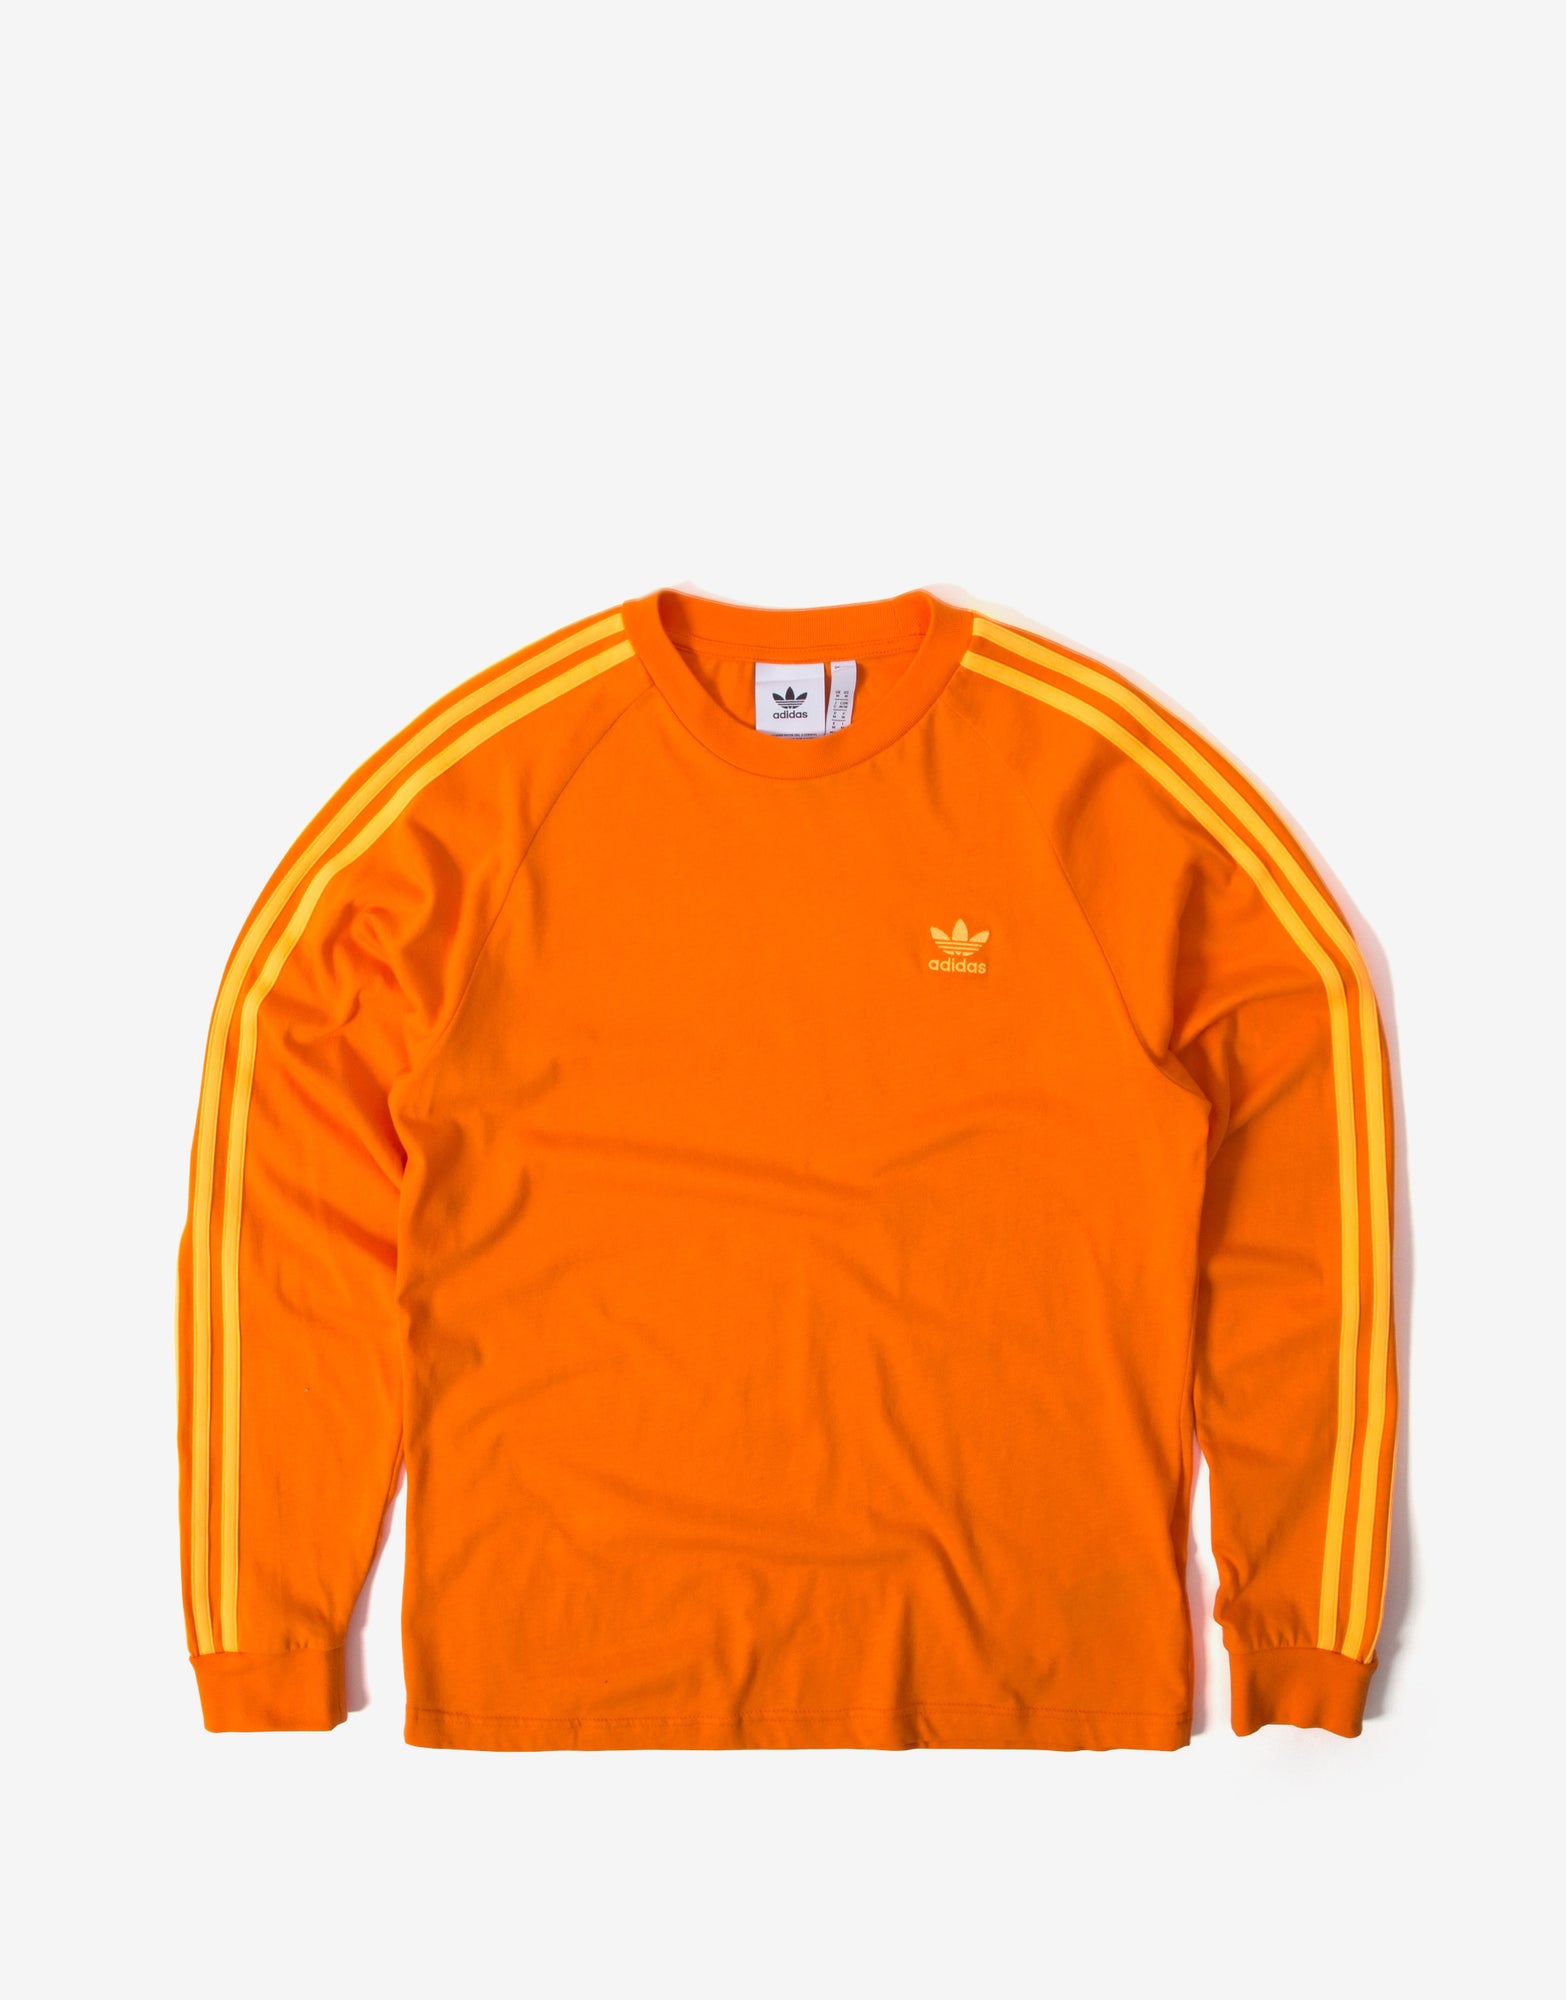 orange adidas clothing